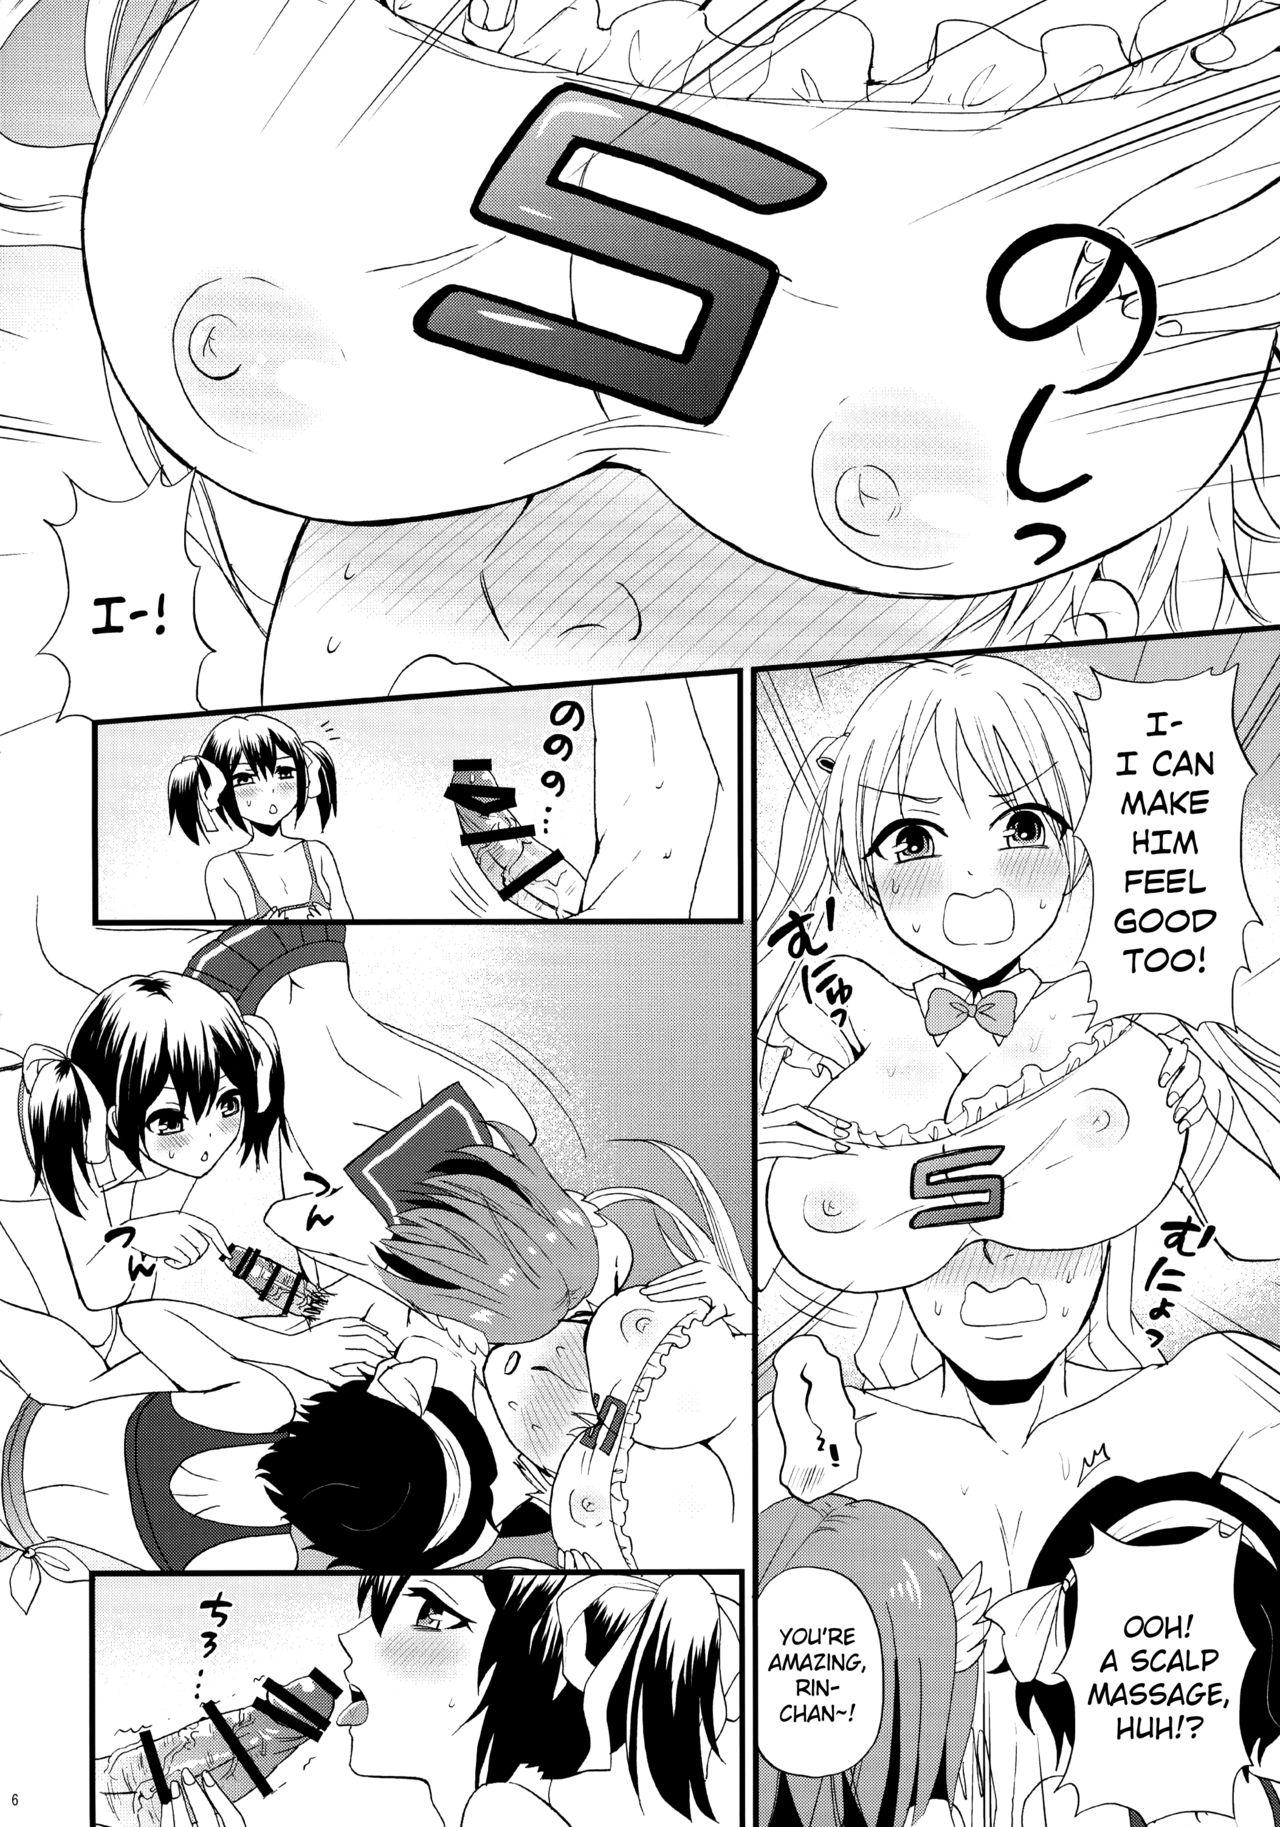 Foreskin Bike-bu no Omotenashi - Bakuon Hardcore Gay - Page 7